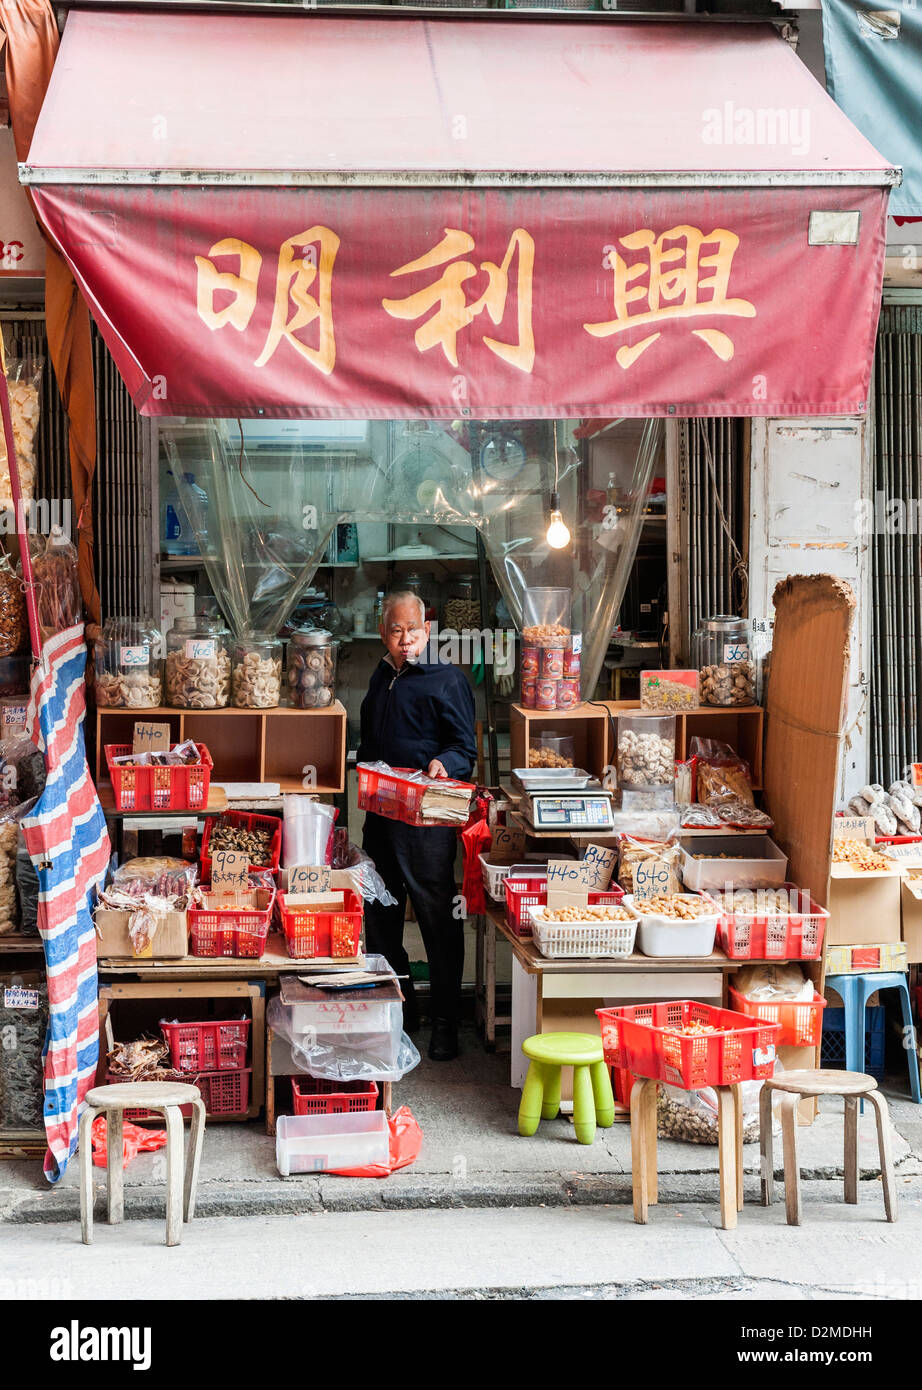 Une boutique près de Des Voeux Road (Rue de fruits de mer séchés), Sheung Wan, Hong Kong. Banque D'Images